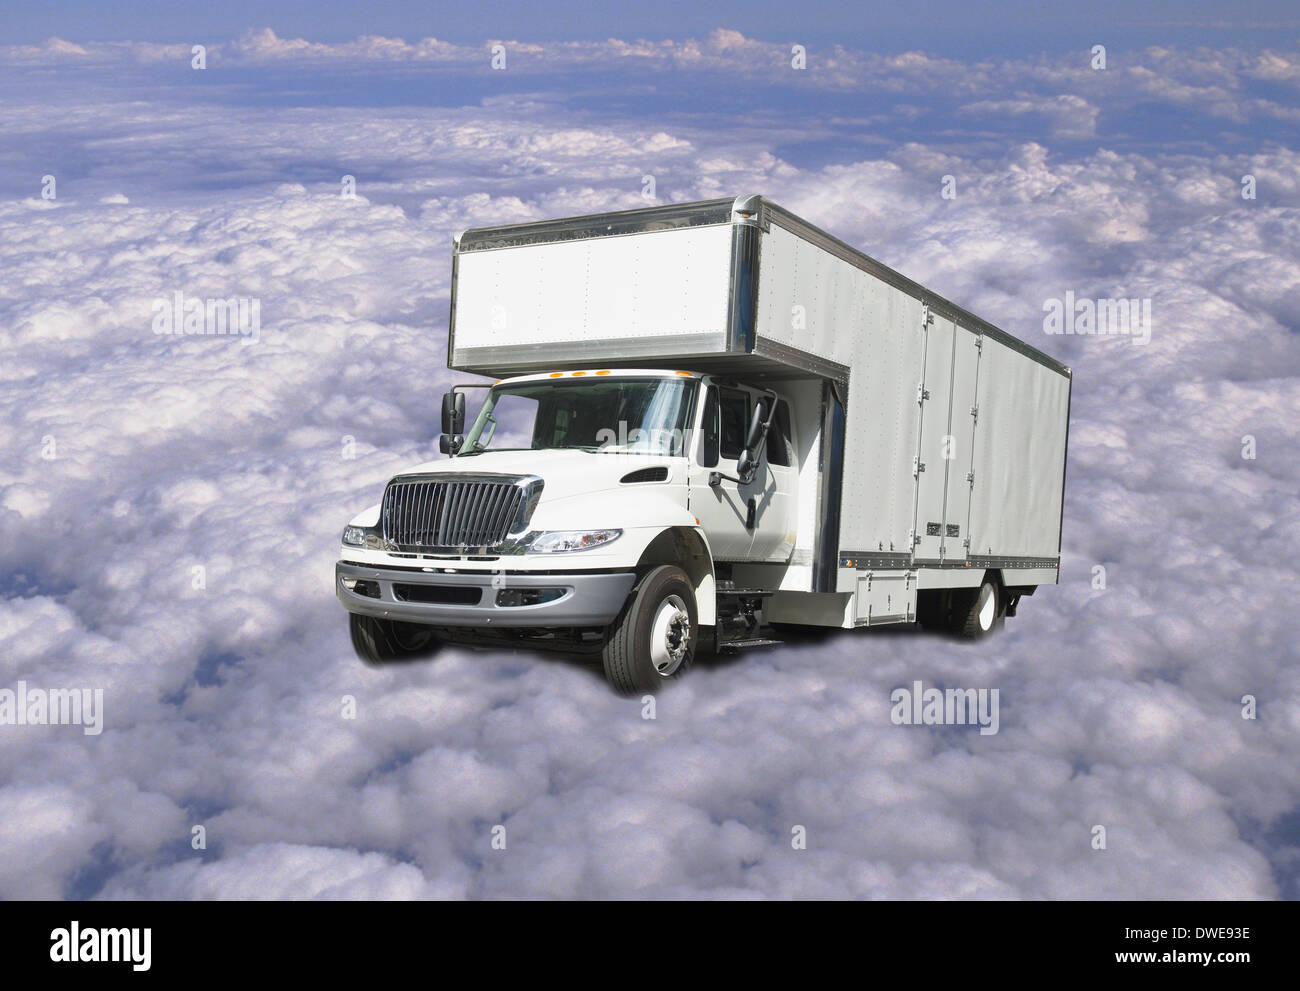 When Trucks Fly